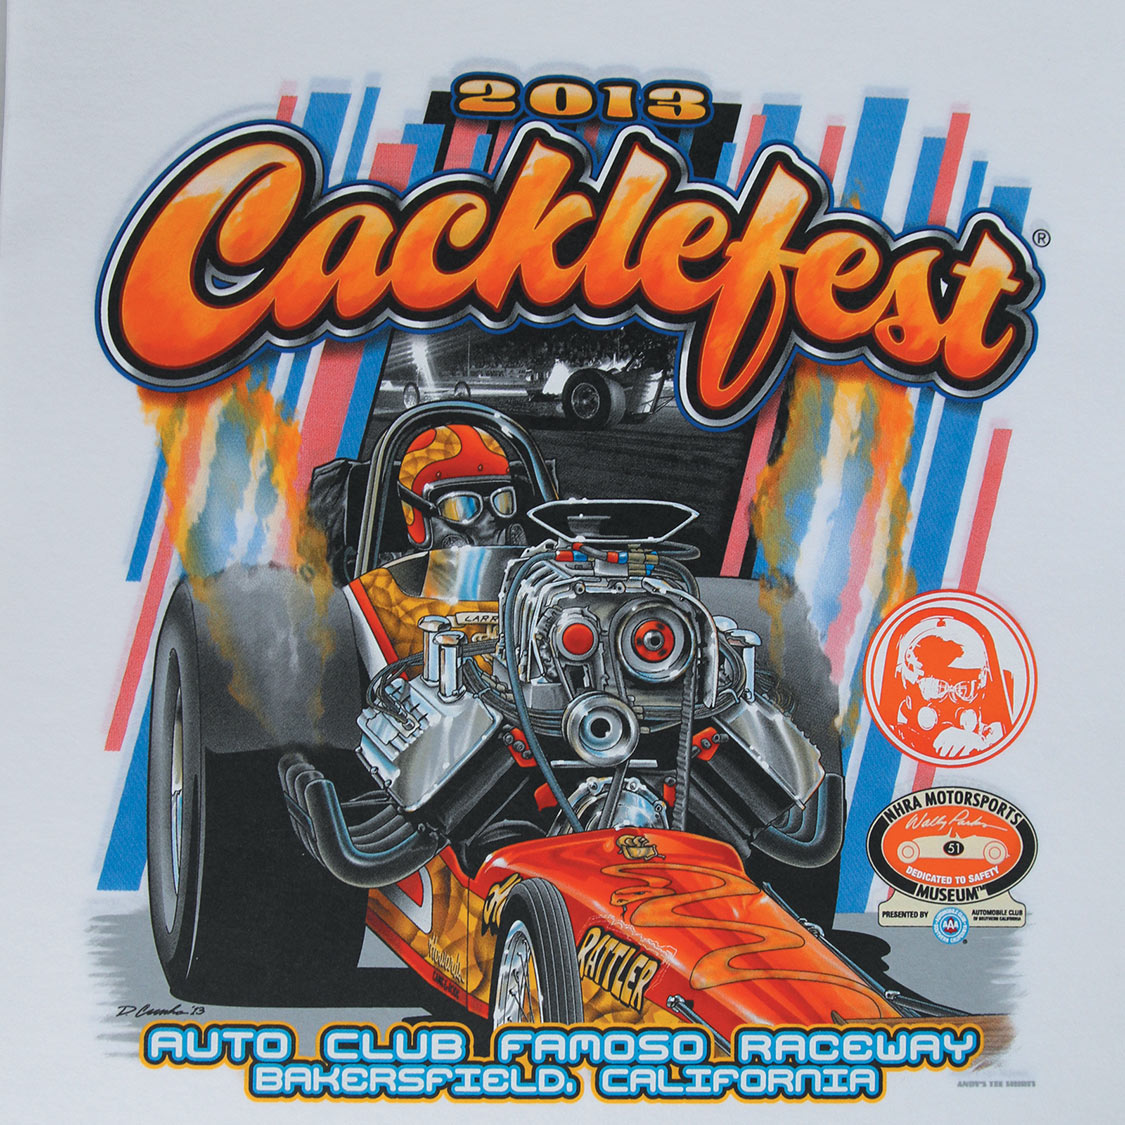 2013 Cacklefest